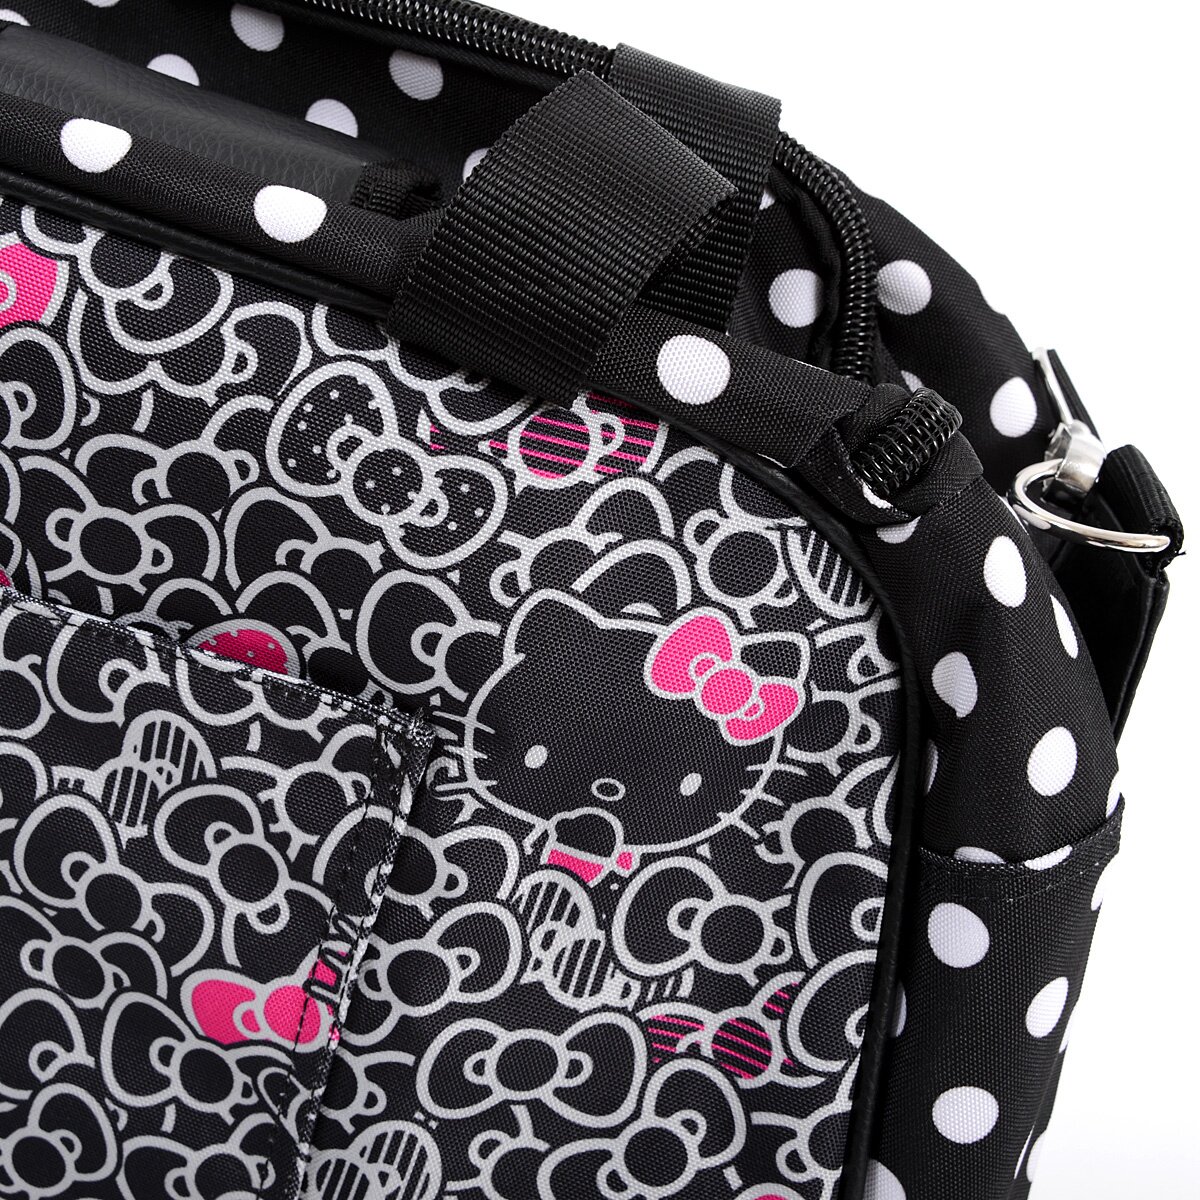 Hello Kitty Rose Handbag - Tokyo Otaku Mode (TOM)